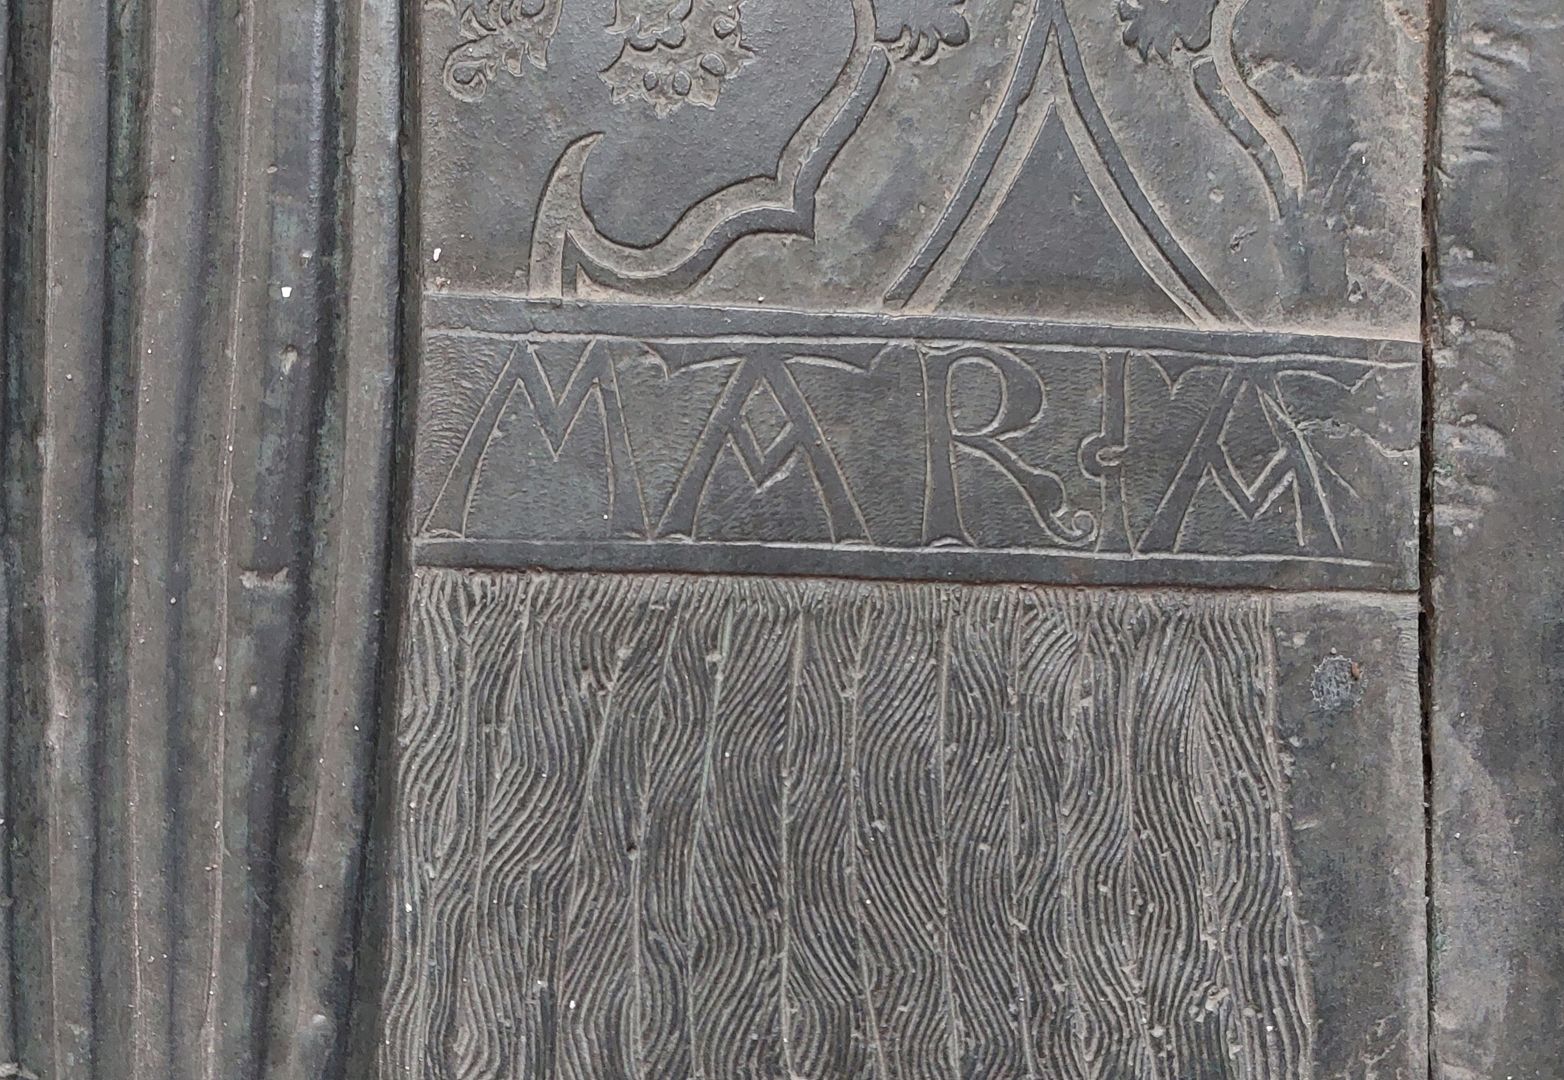 Grabplatte der Herzogin Sophia von Mecklenburg, Prinzessin von Pommern rechte mittlere Plattenpartie, Vorhangmuster und Inschrift "MARIA"